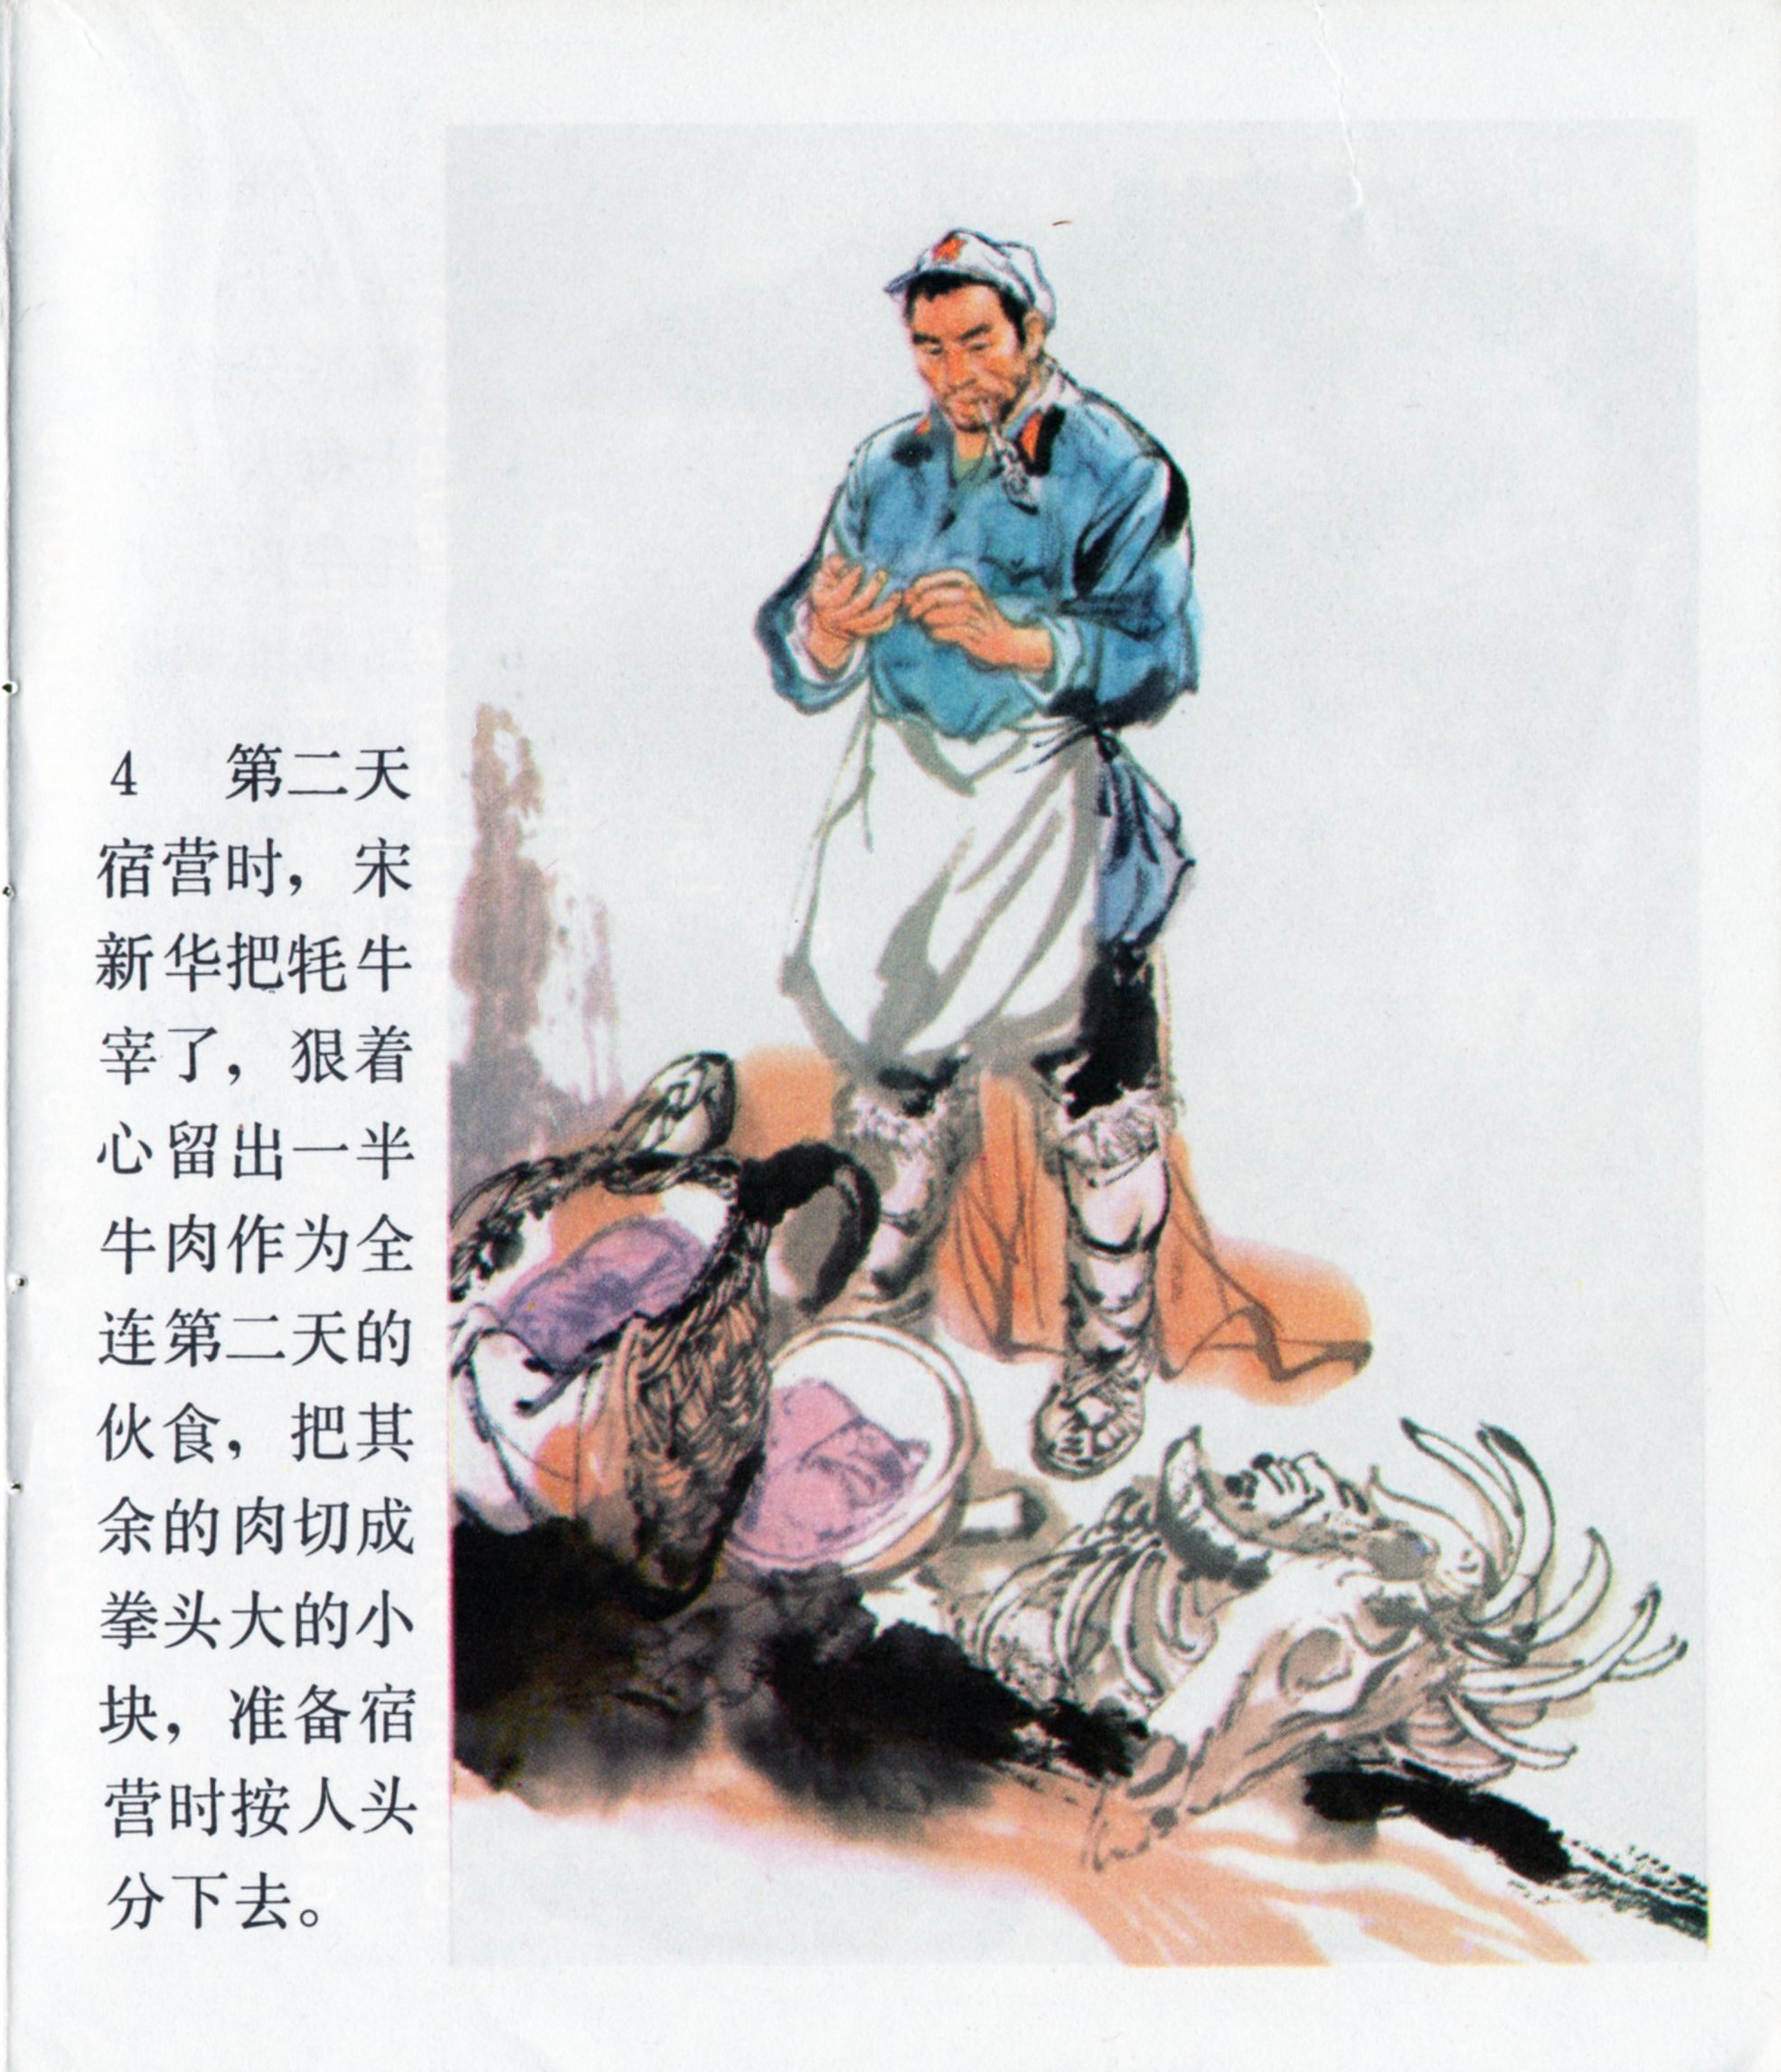 彩色连环画《肩膀》，讲述红军长征途中朱德总司令的两个故事